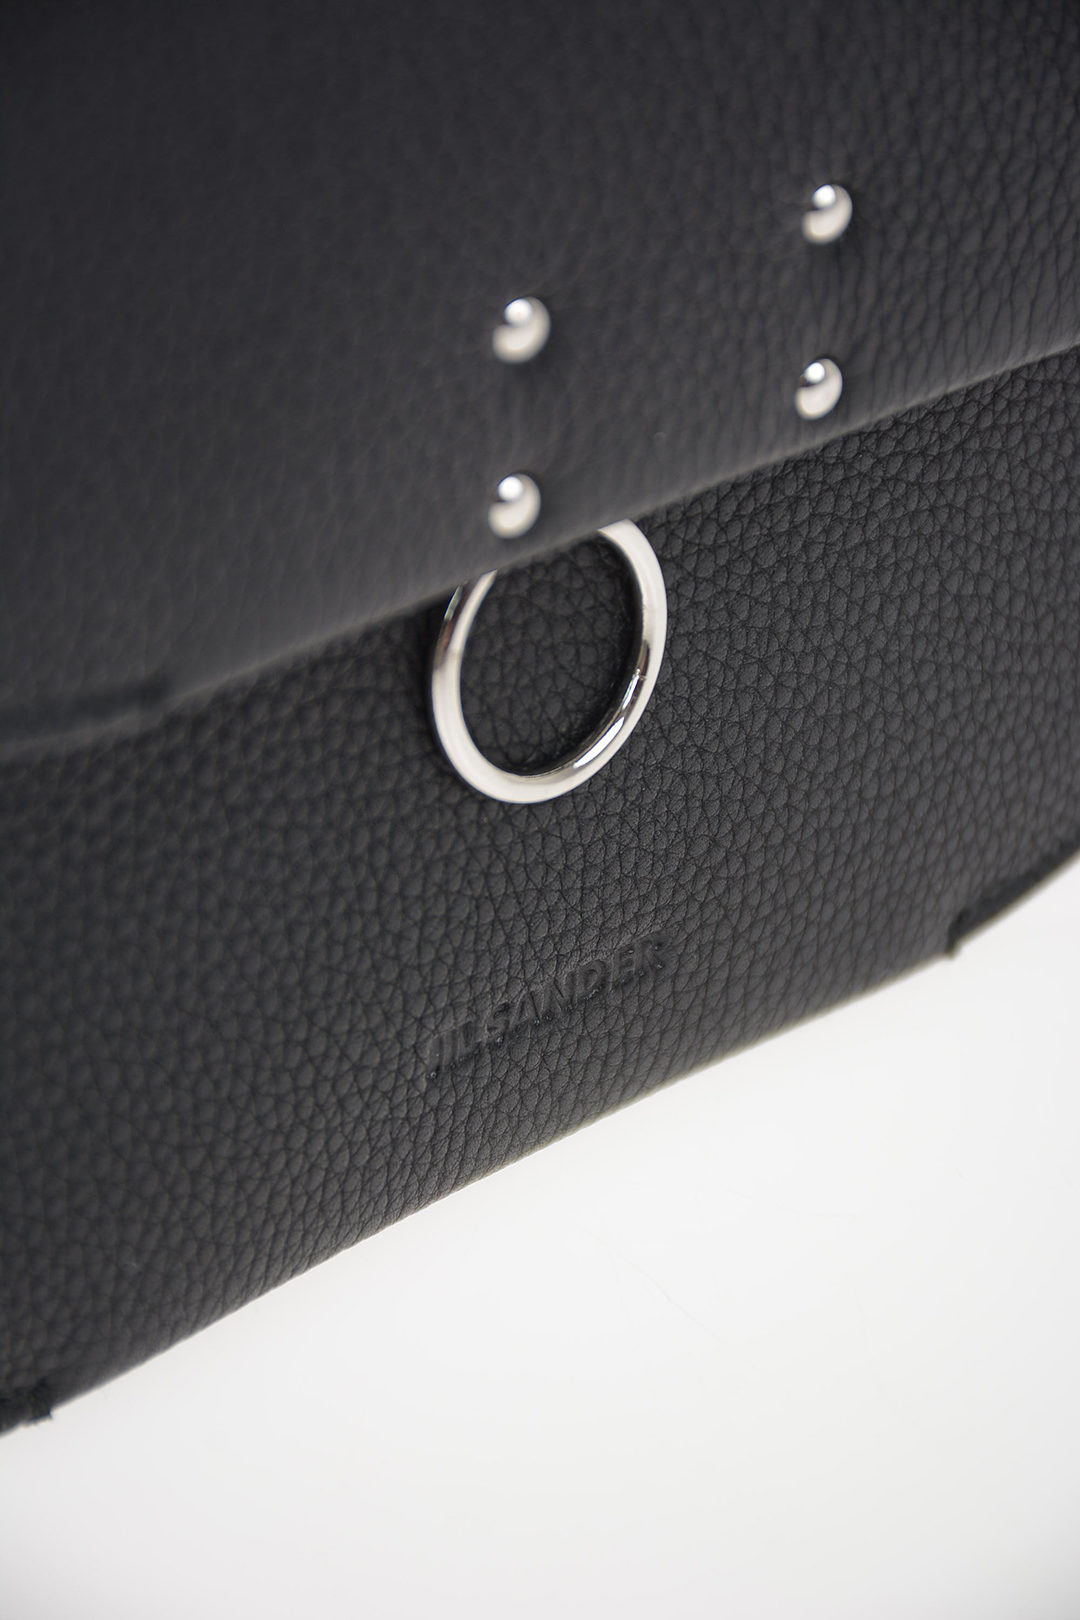 Jil Sander - Black leather saddle bag with logo J08ZH0005P5672 buy